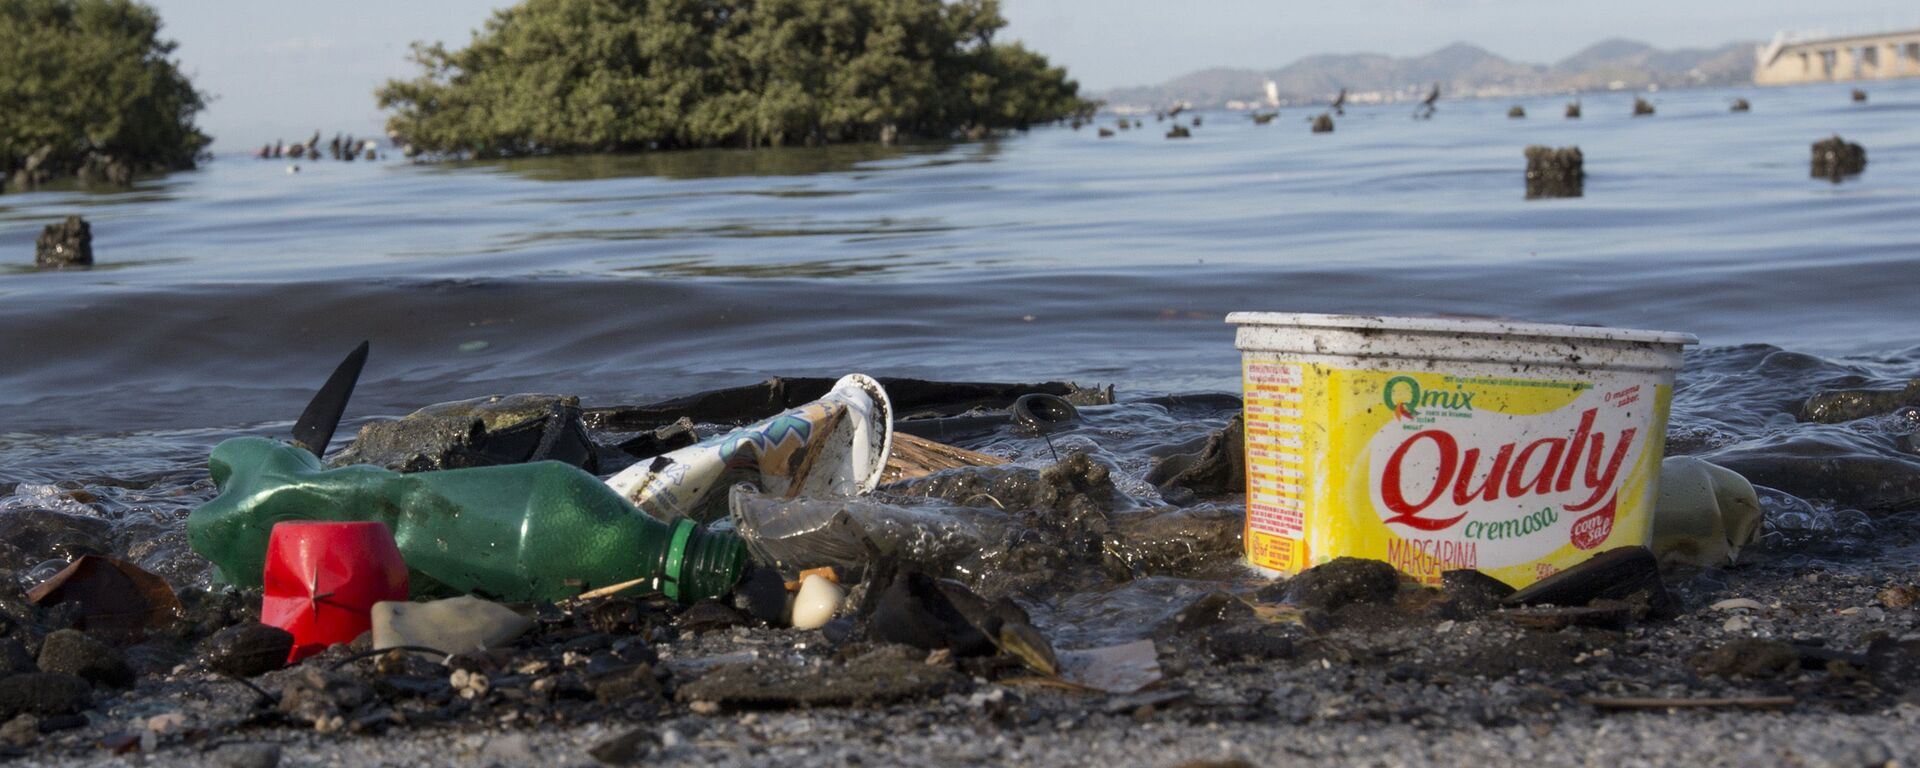 Lixo plástico é visto na baía de Guanabara, no Rio de Janeiro - Sputnik Brasil, 1920, 14.08.2020